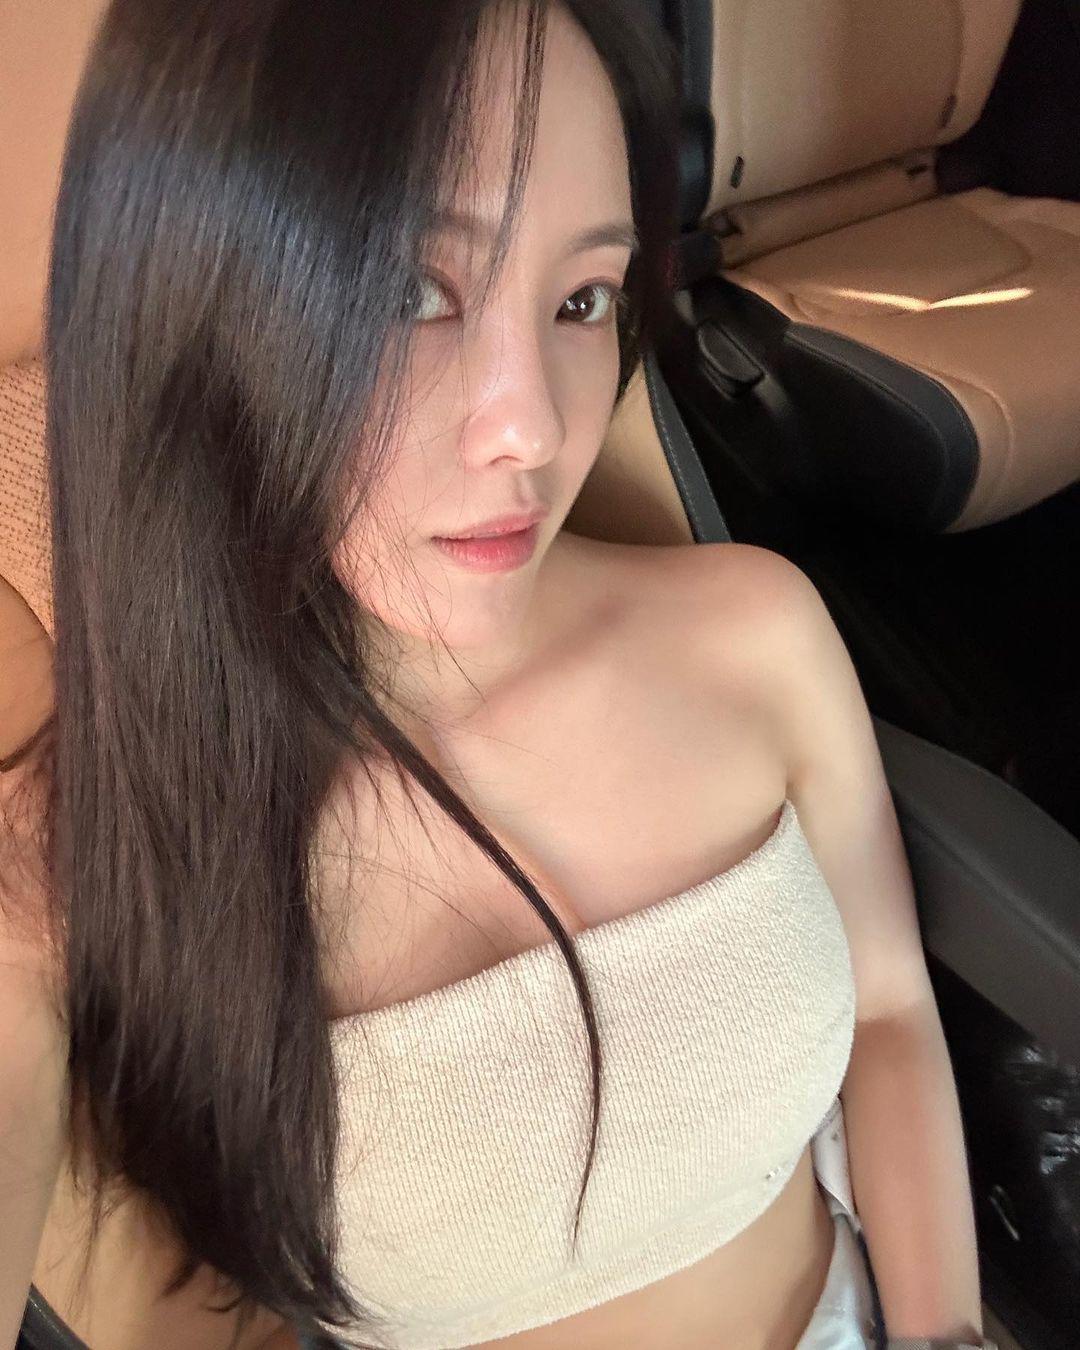 Nữ ca sĩ từng lọt top 1 tìm kiếm tại Việt Nam U40 vẫn xứng danh "mỹ nhân ngực đẹp" - 9